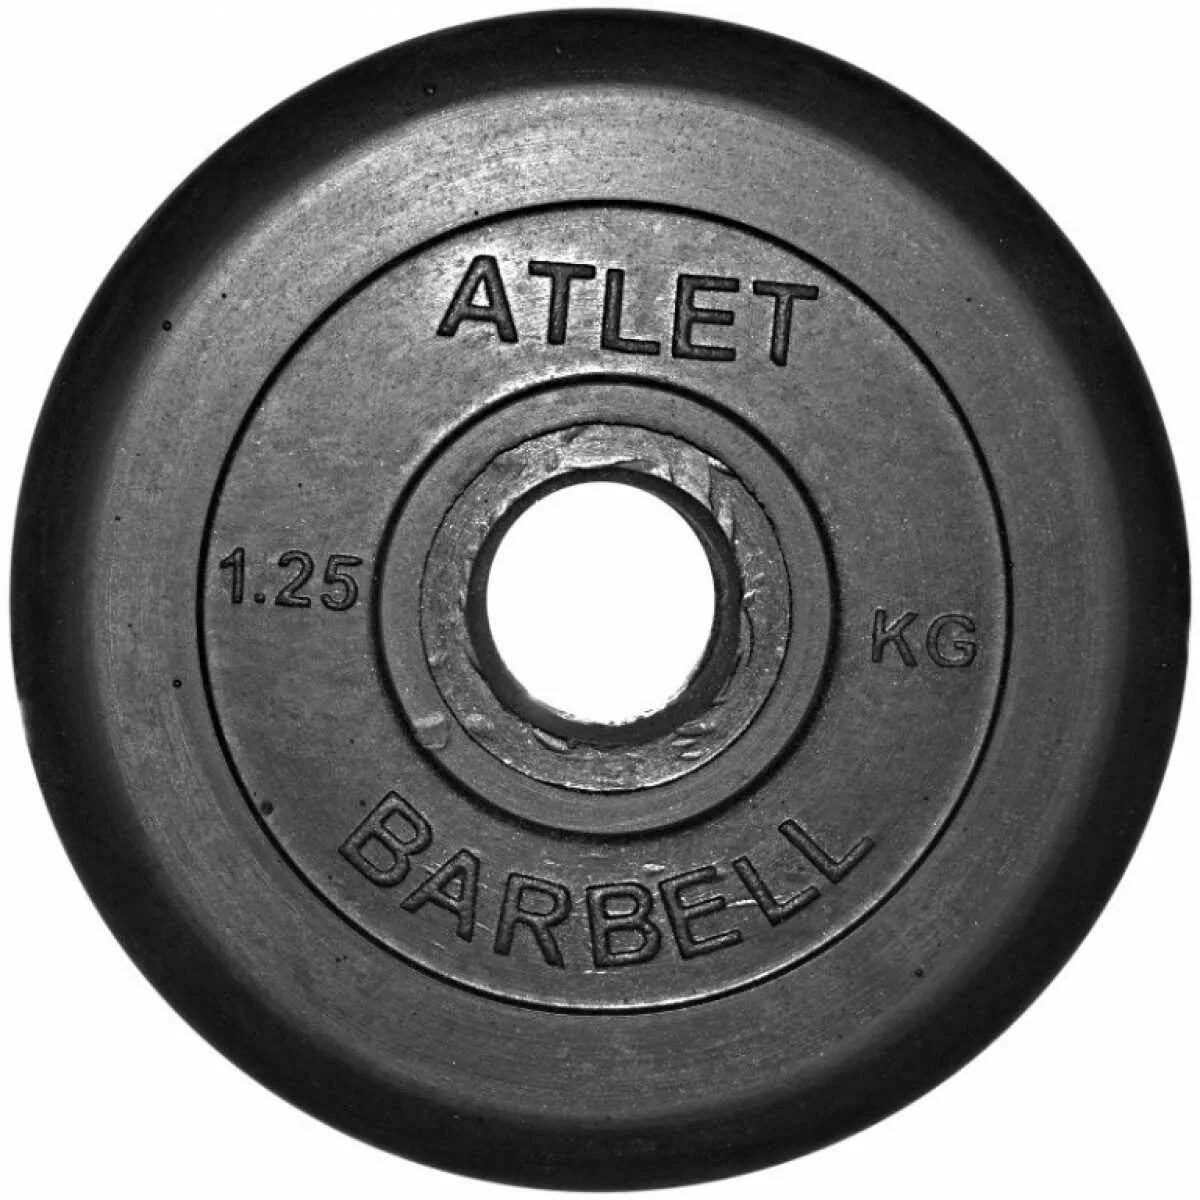 Диск MB Barbell MB-atletb31 25 кг. Диск обрезиненный черный MB Atlet d-26 1,25кг. Диск MB Barbell MB-atletb51 1.25 кг. Диск блин MB Barbell 1.25 кг 26 мм.